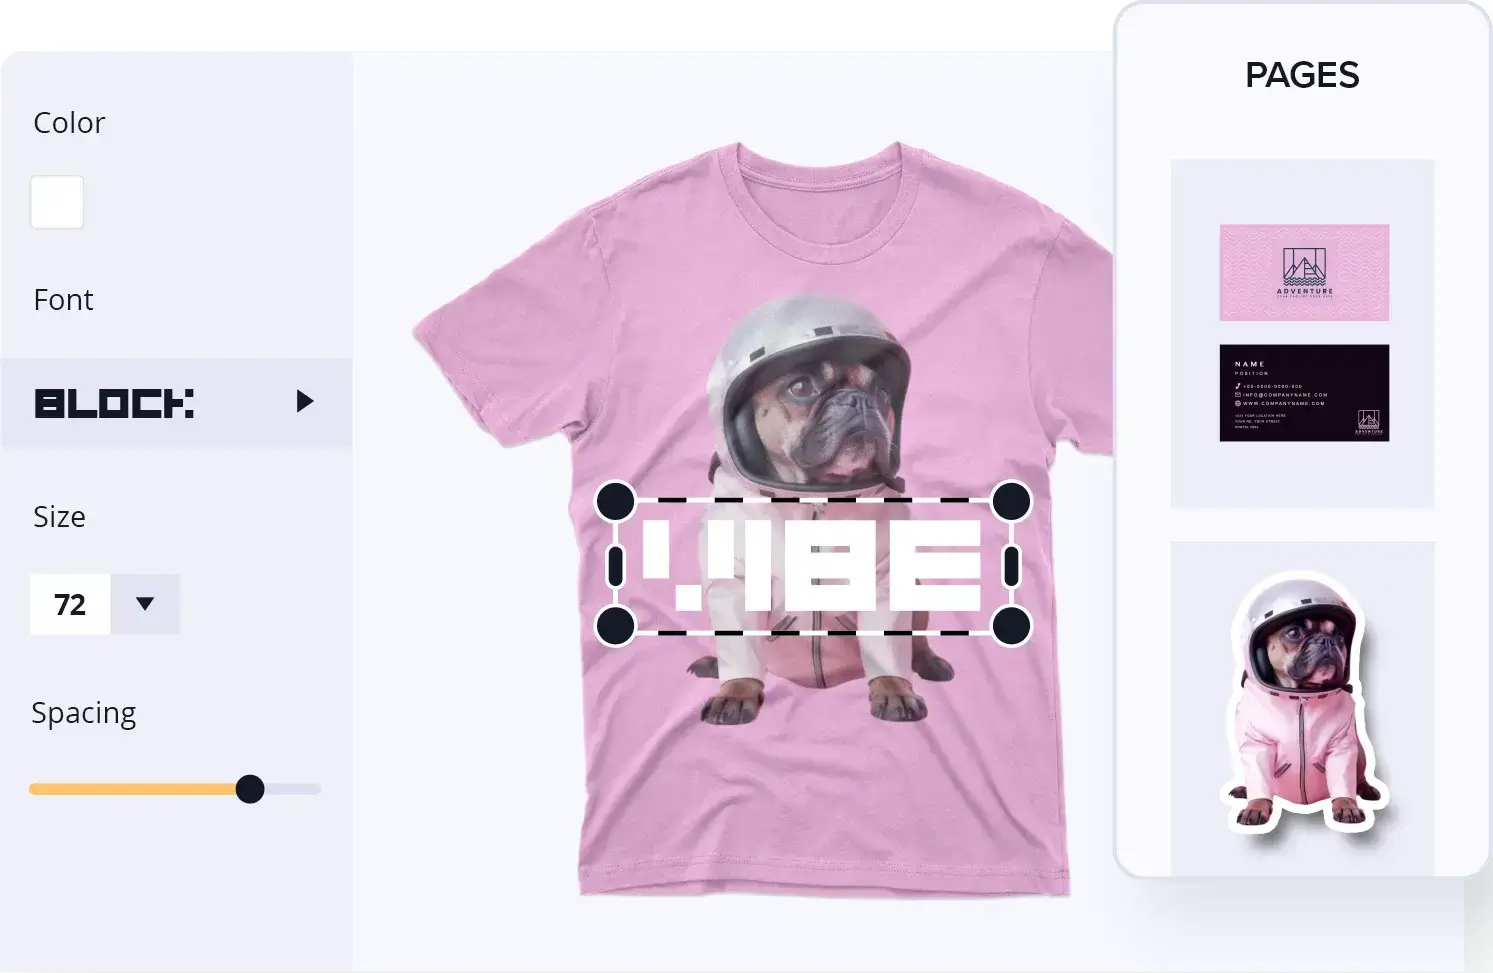 Interface d'édition graphique montrant un t-shirt rose avec un chien en combinaison spatiale et le mot "VIBE" en surimpression.